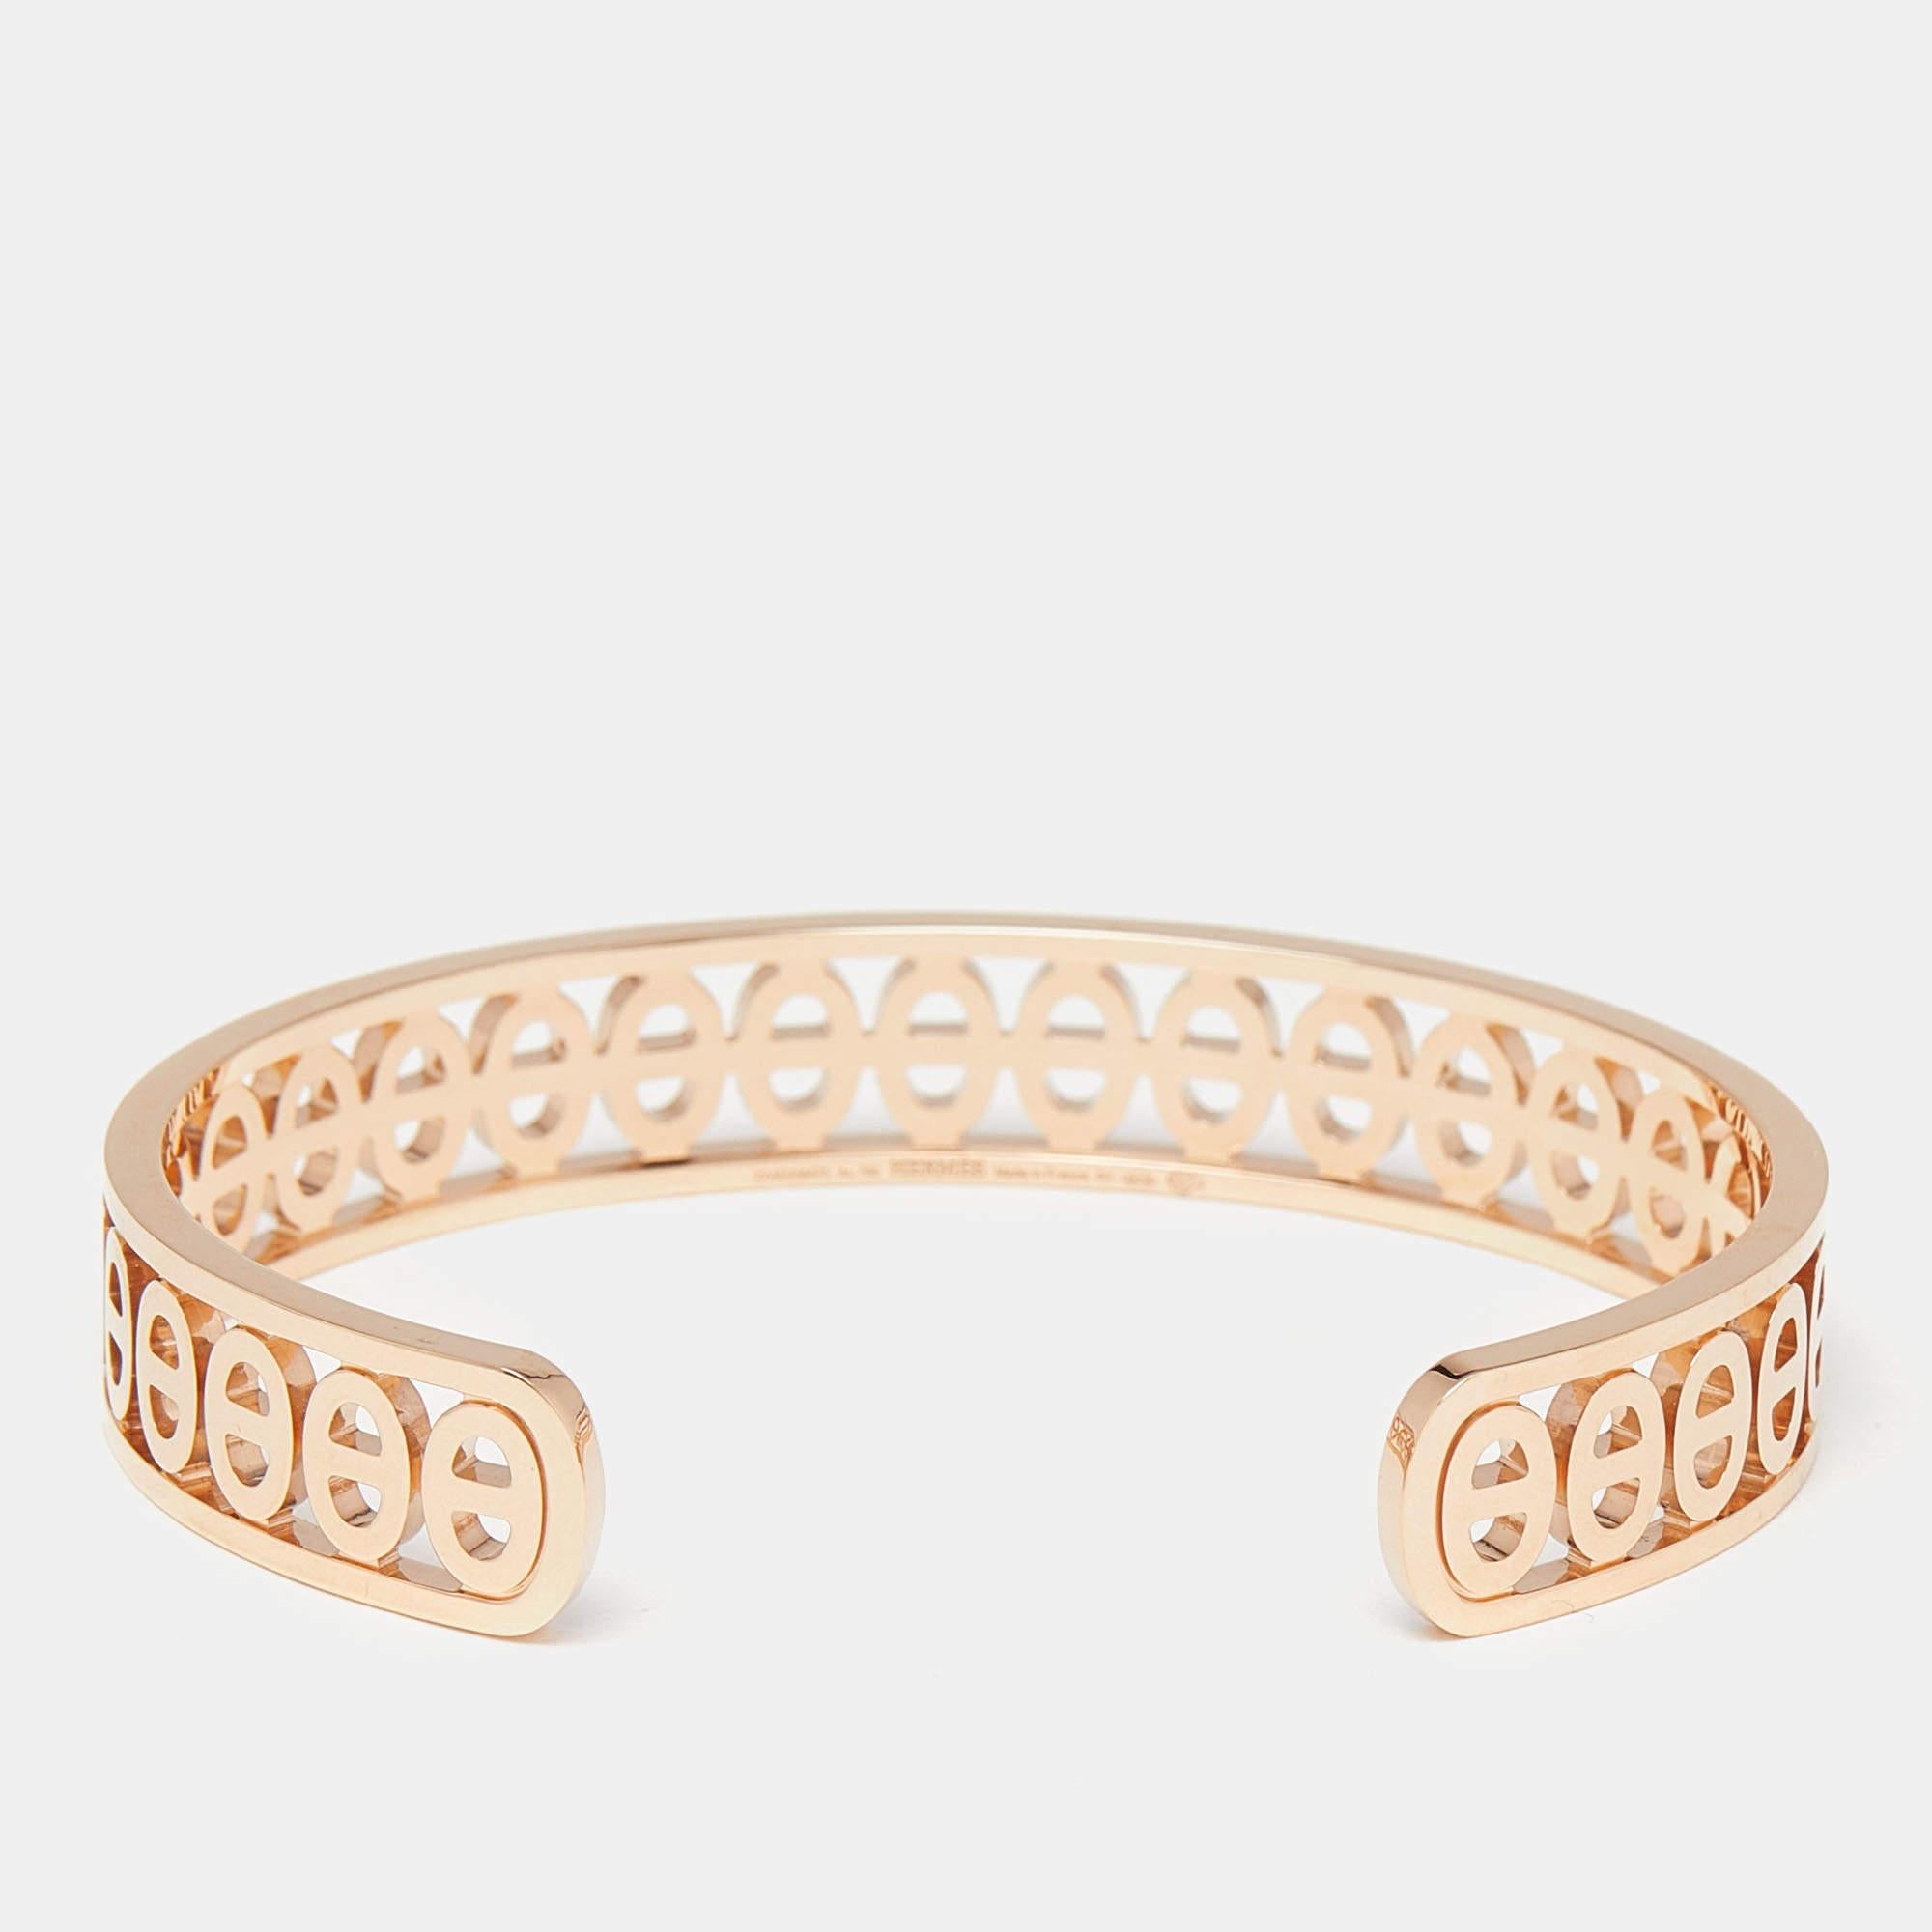 Le choix des meilleurs matériaux et le savoir-faire artisanal font de ce bracelet Hermes Chaine D'ancre Divine une création qui mérite d'être chérie. Il se porte gracieusement sur n'importe quel poignet.

Comprend
Boîte d'origine, étui d'origine,